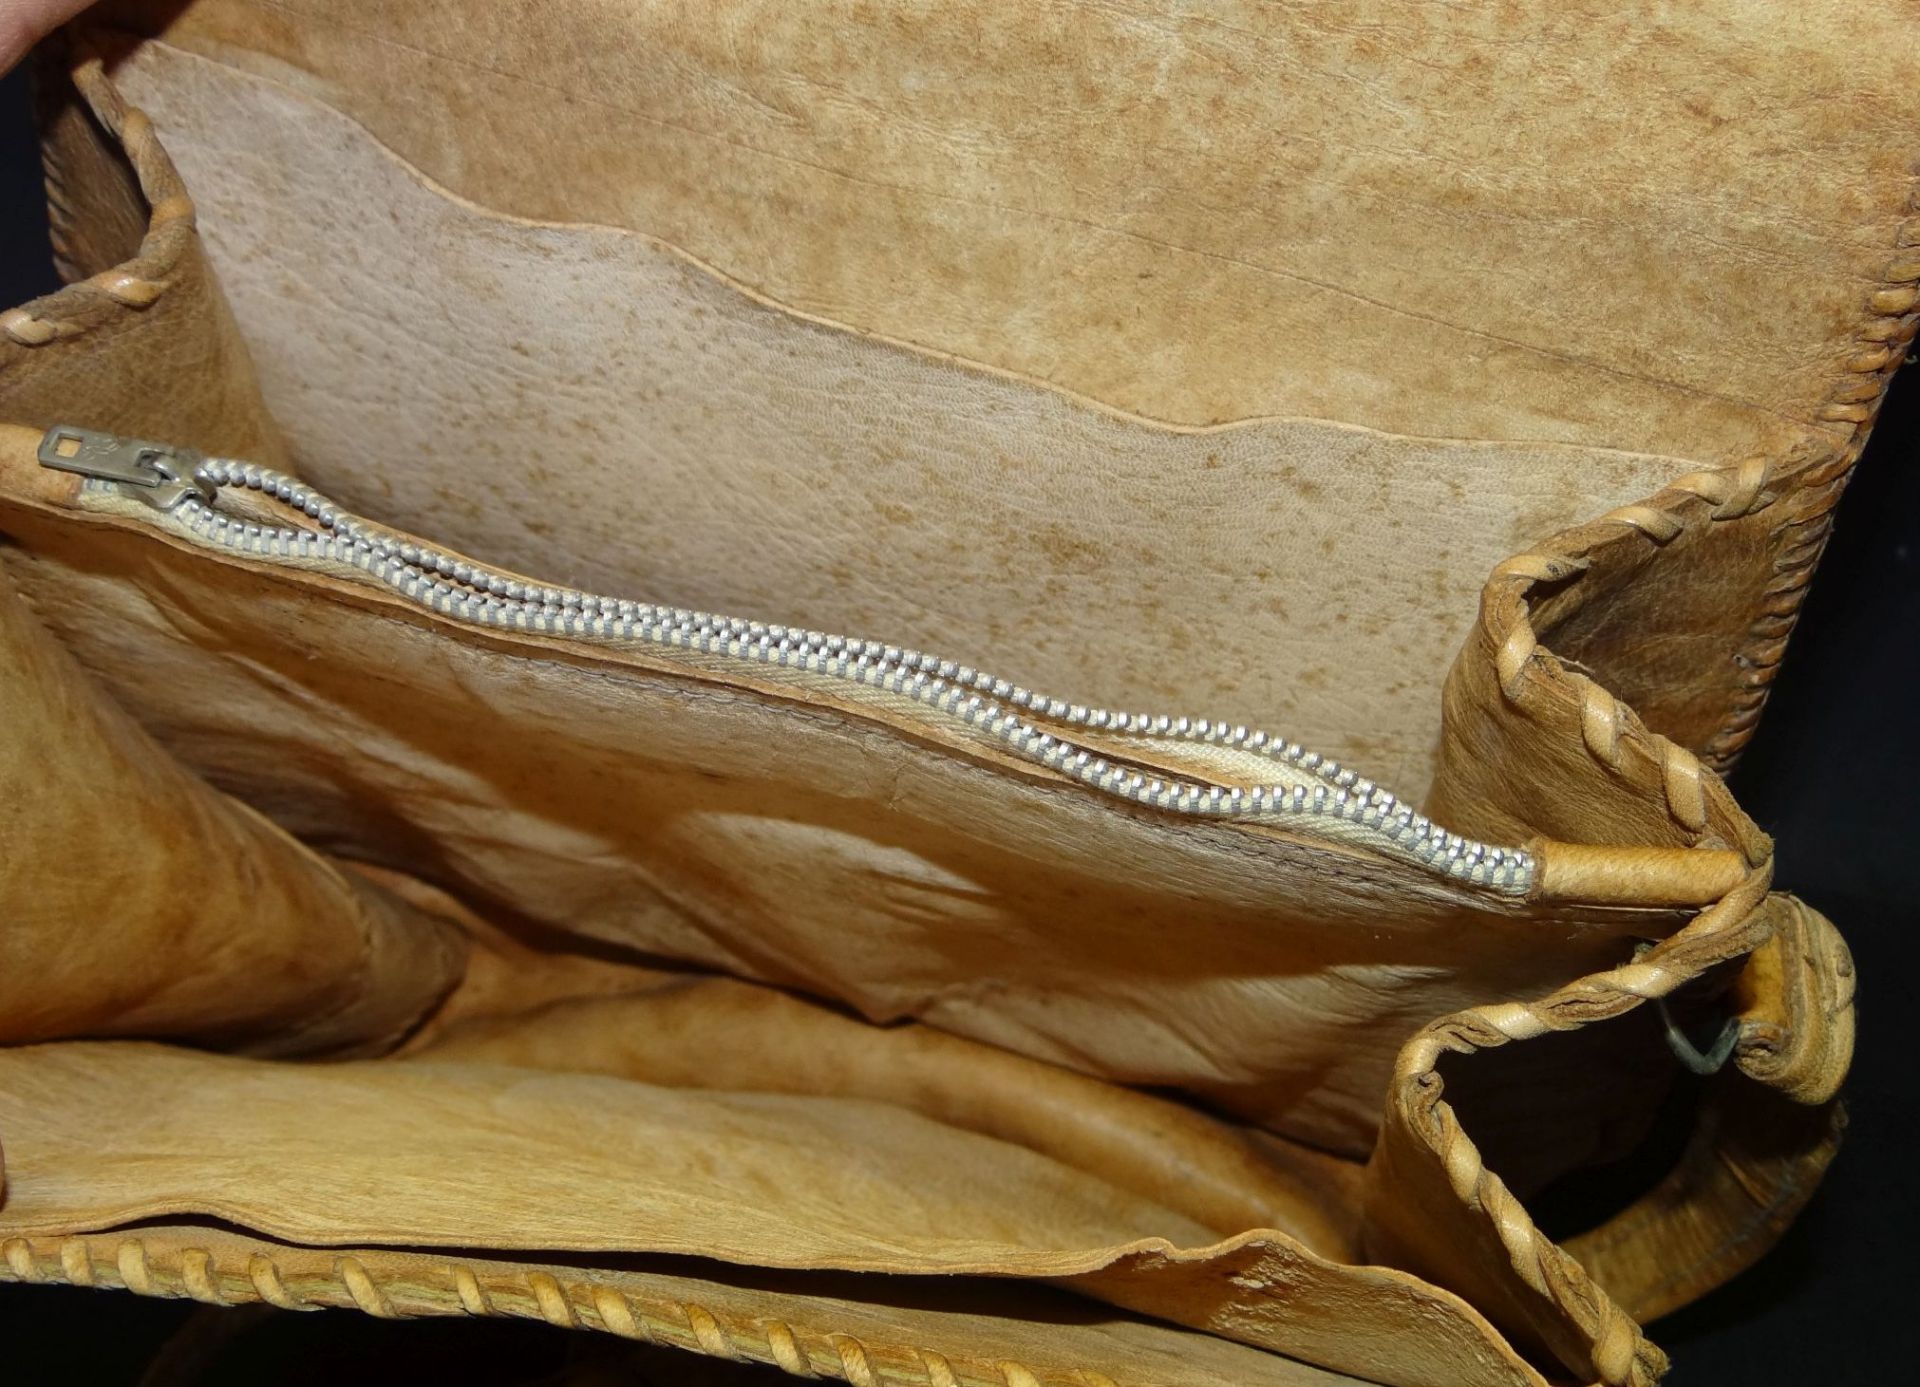 Krokoleder-Handtasche, 20x23 cm, guter Zustand - Bild 5 aus 5